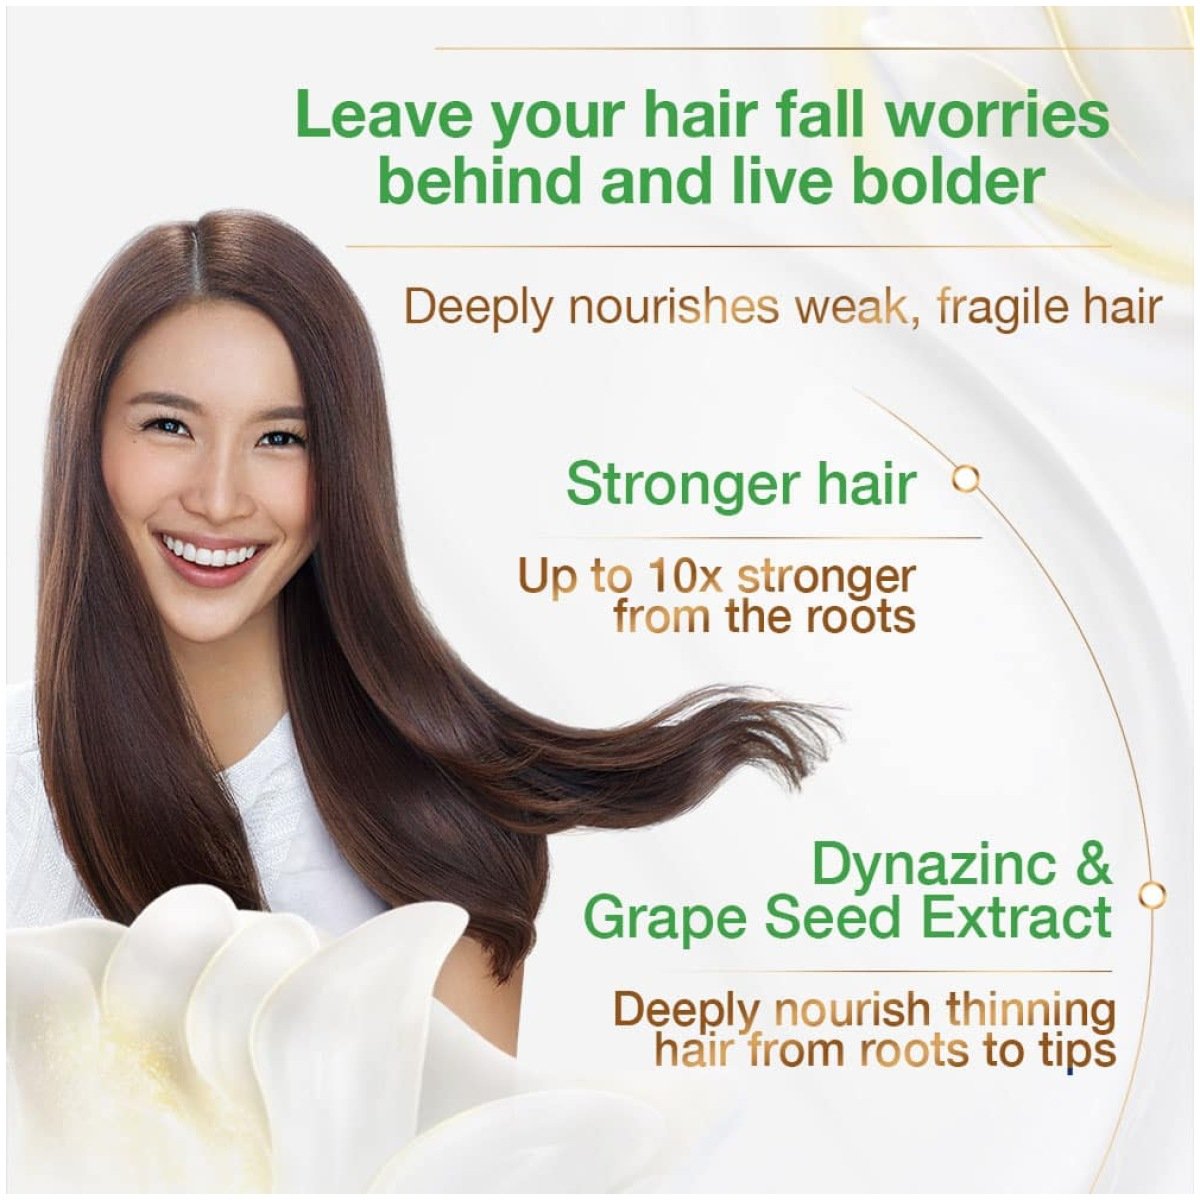 Dove Shampoo Hair Fall Rescue (680ml)